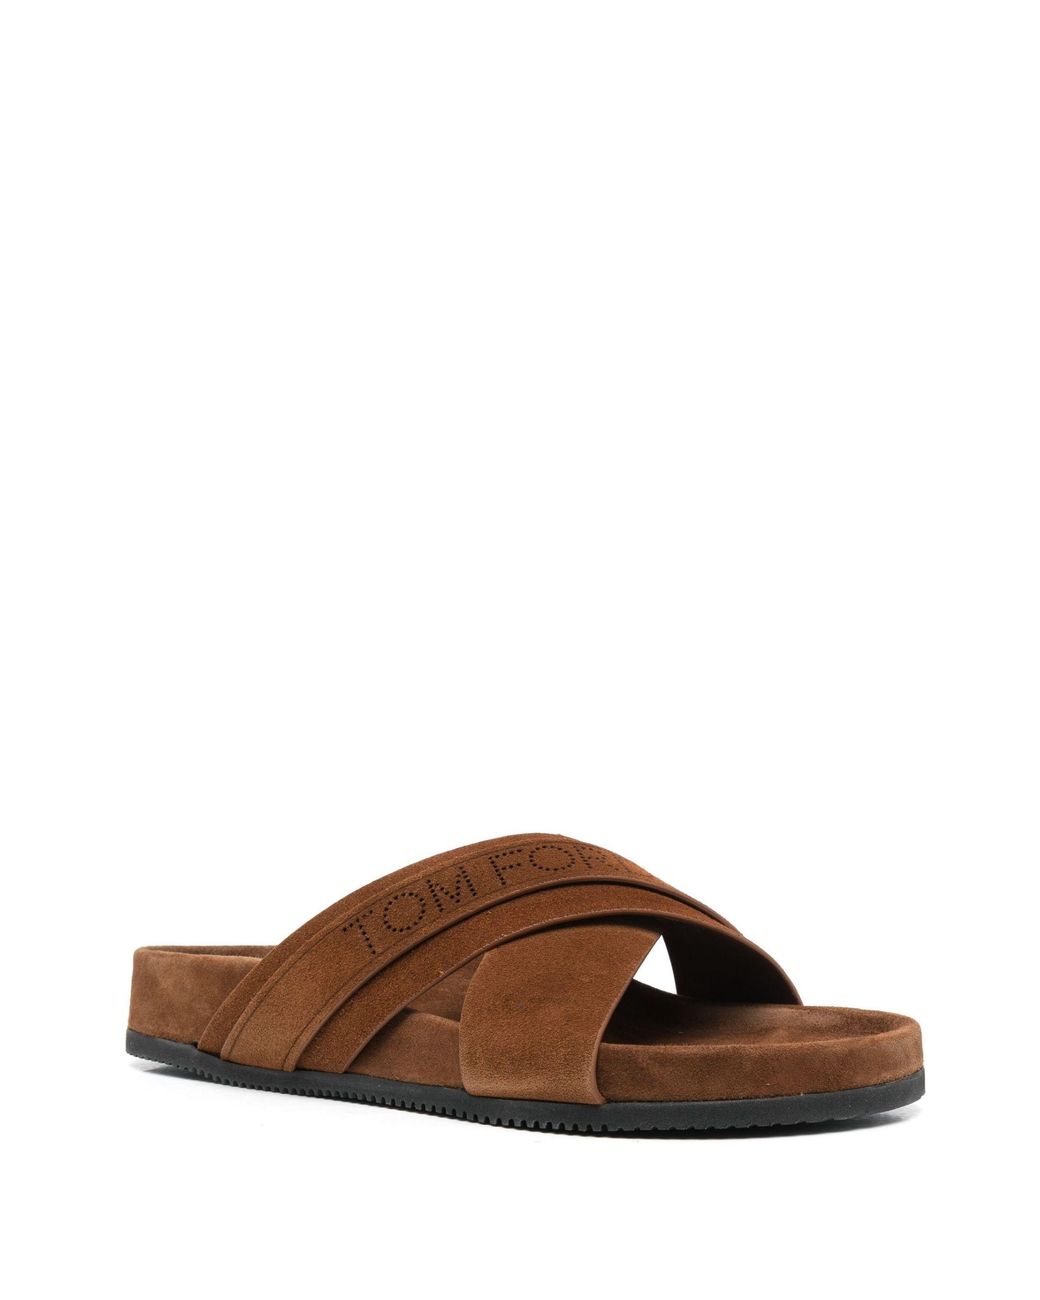 for Men Black Mens Shoes Sandals slides and flip flops Leather sandals Tom Ford Logo Suede Crossover Sandals in Brown 